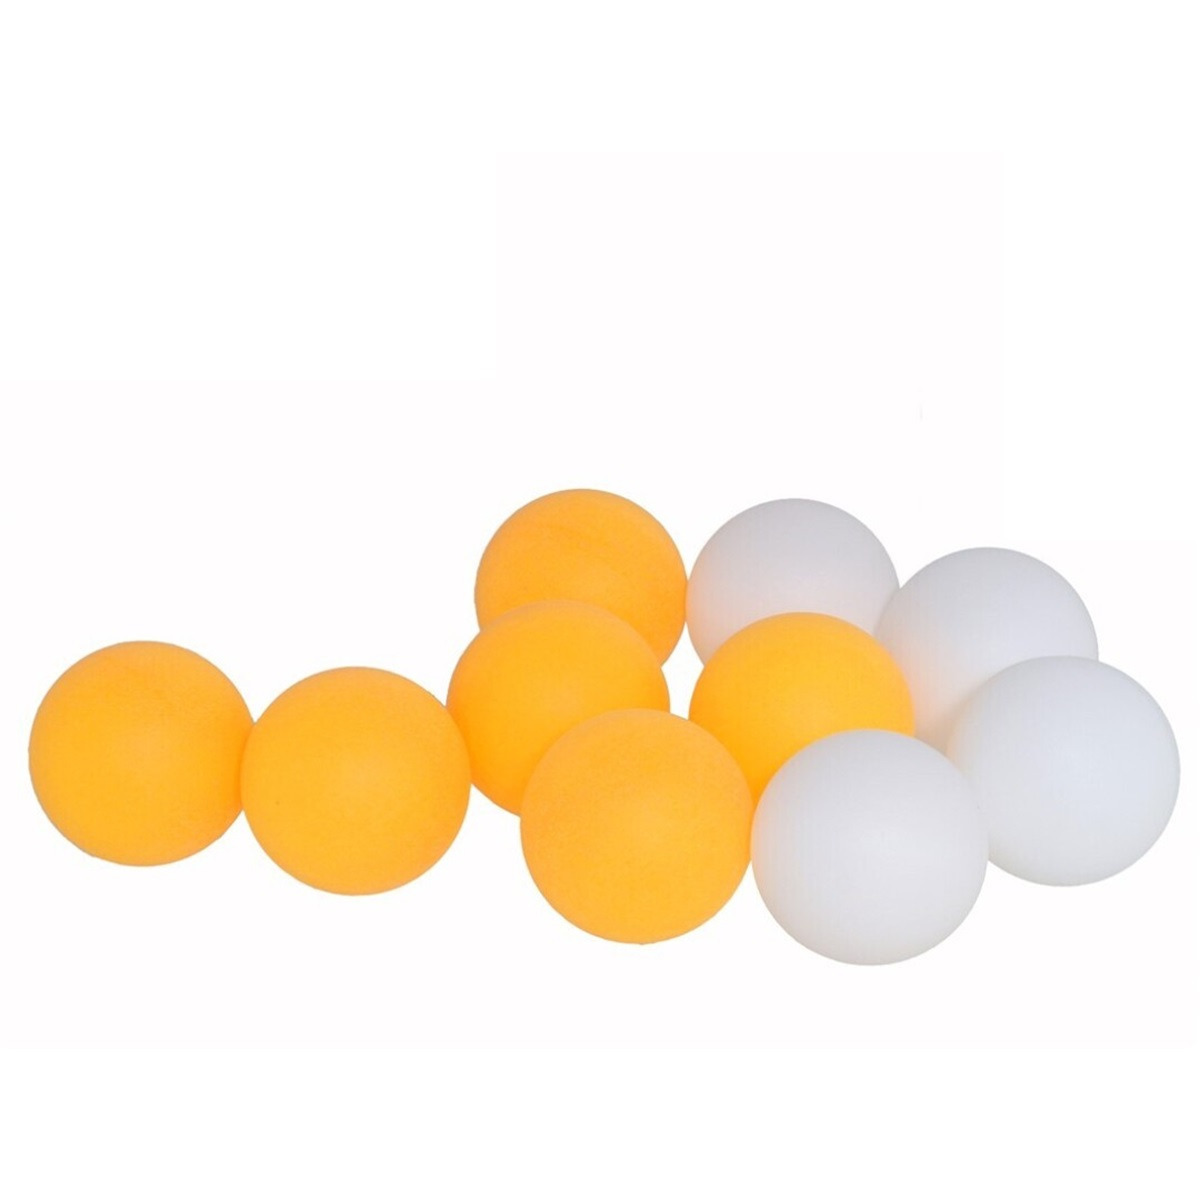 Tafeltennisballen setje - 10x balletjes - kunststof - geel/wit - pingpong -